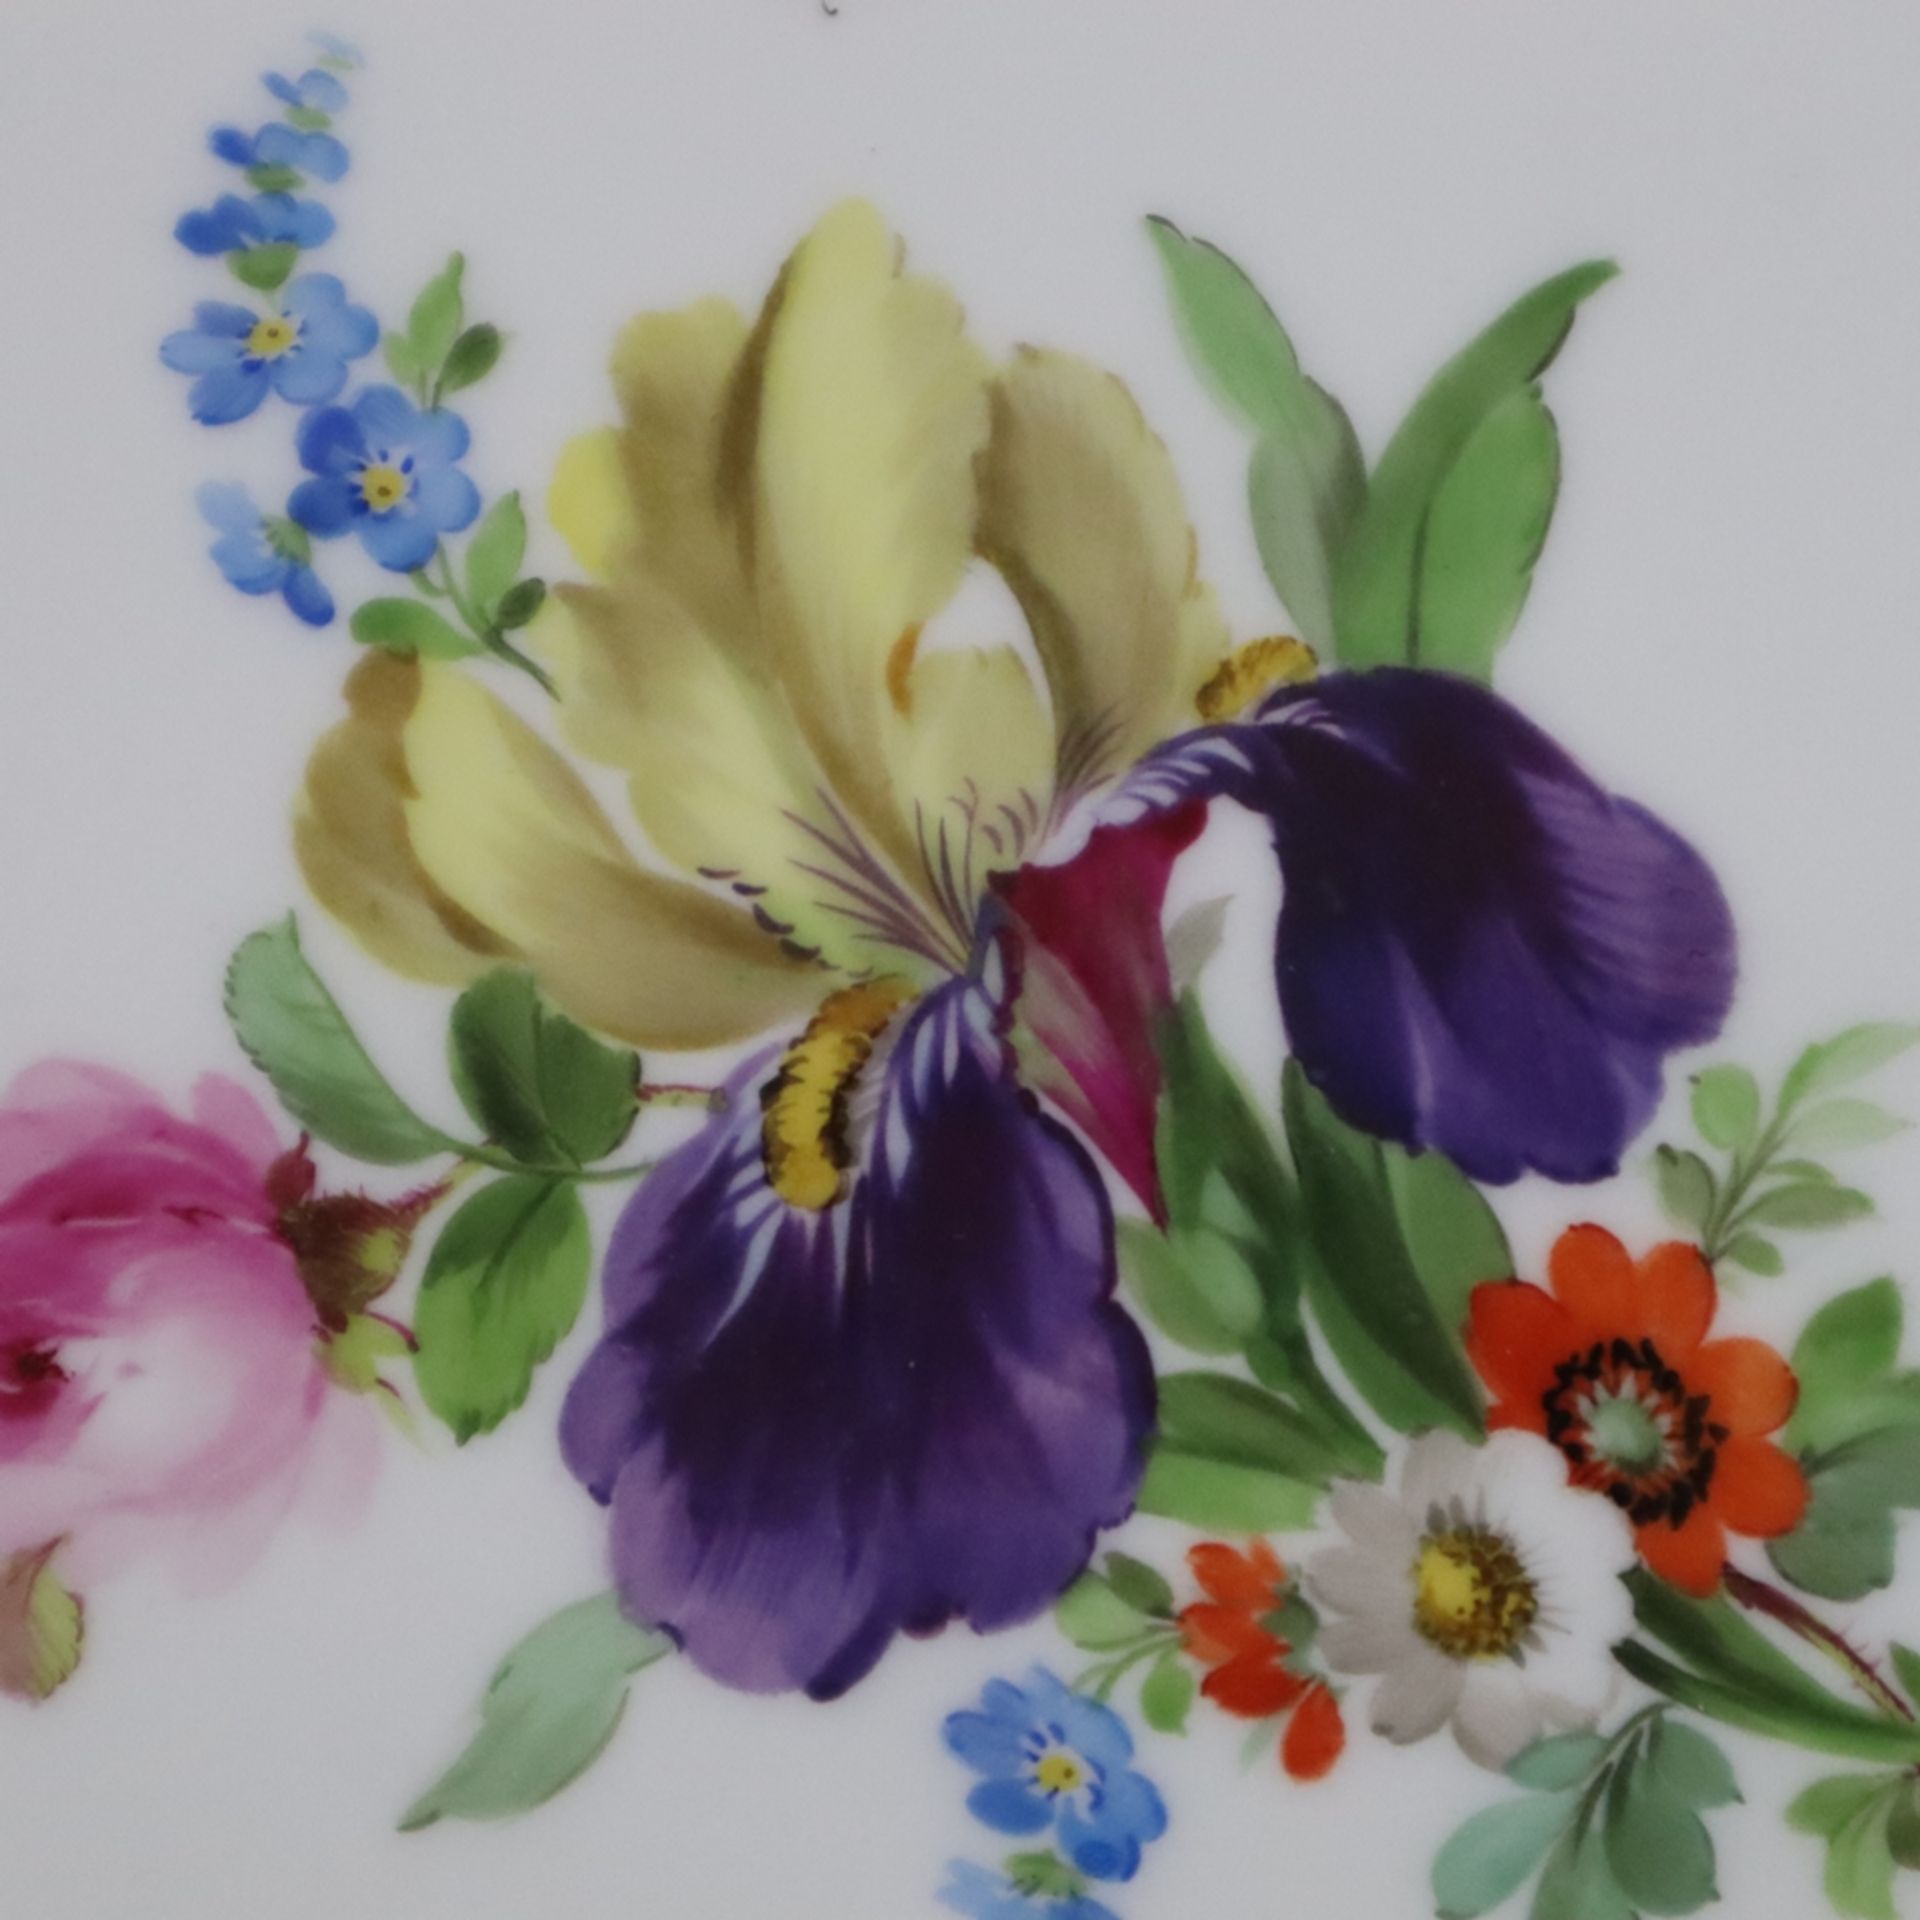 Durchbruchteller - Meissen, Knaufzeit, Porzellan, polychrome Blumenmalerei mit Insekten, Goldstaffa - Bild 3 aus 9